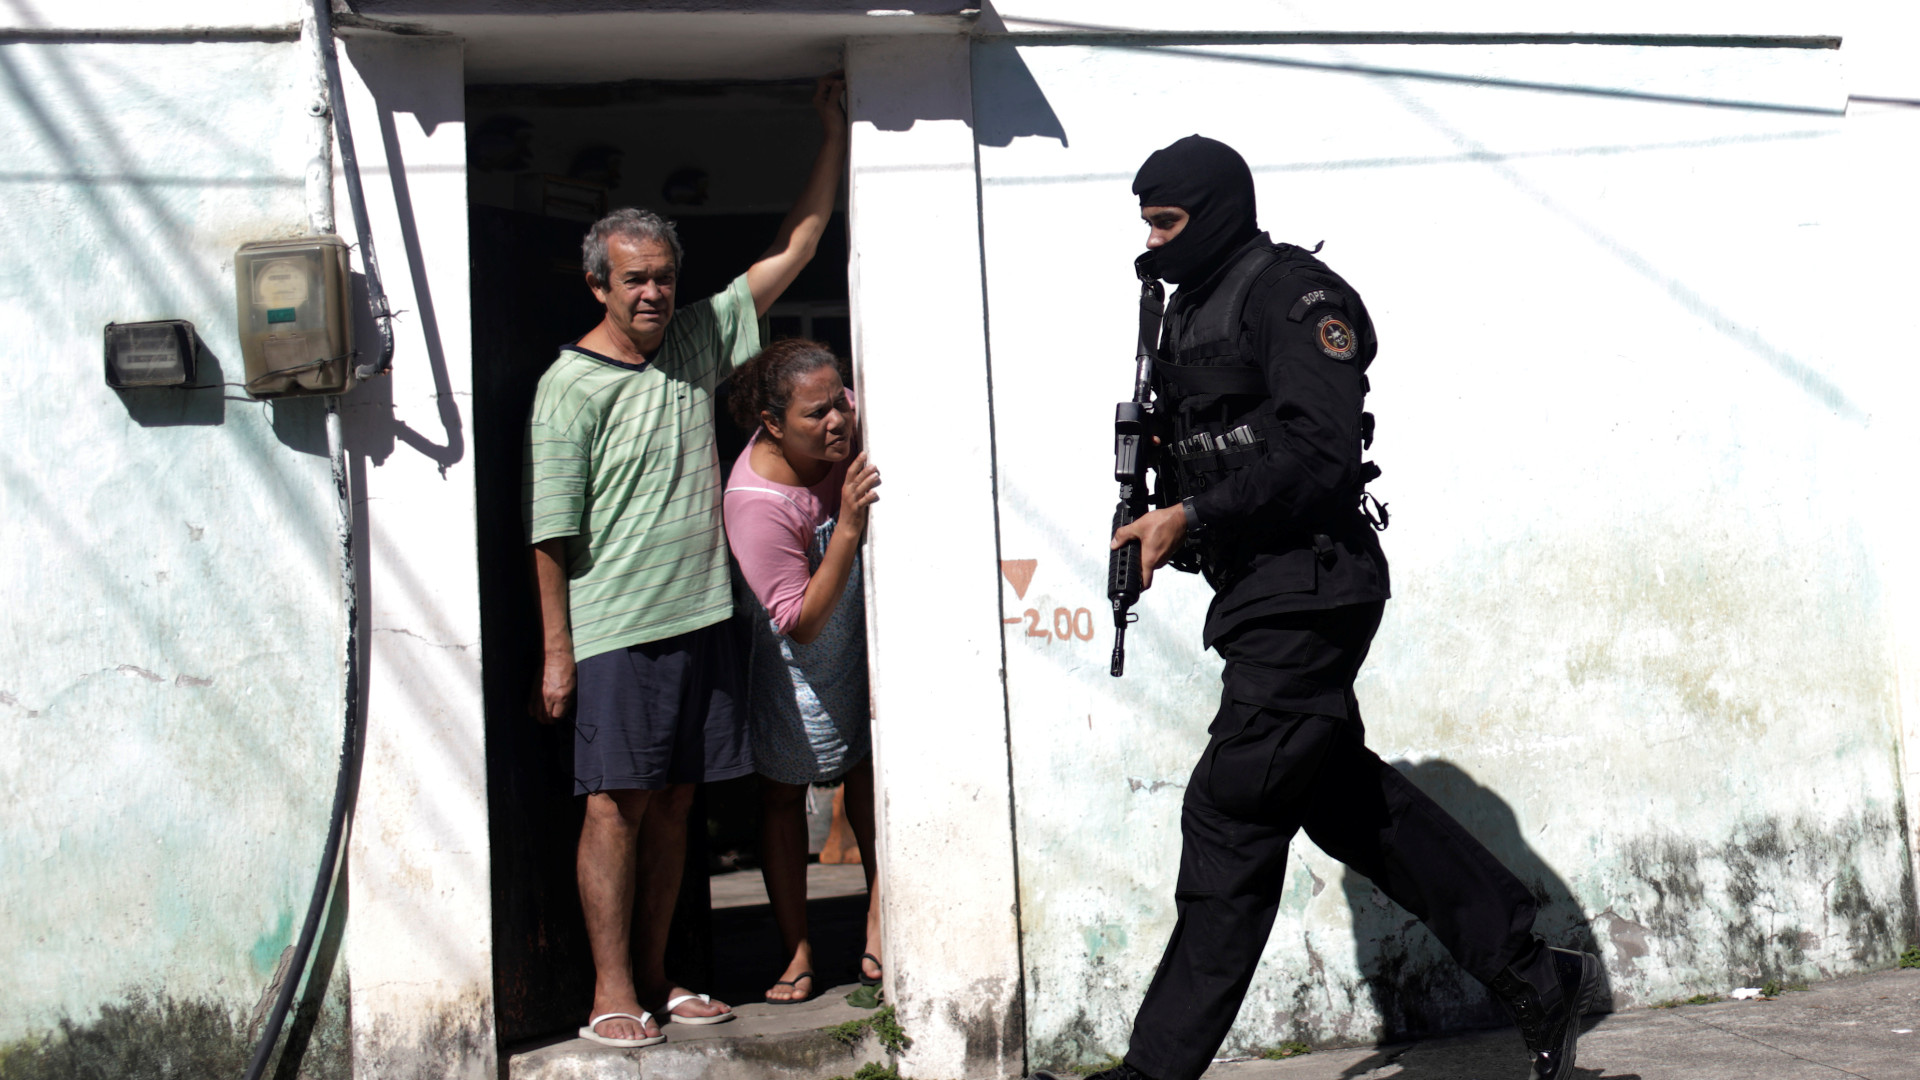 Especialista não vê saída para efeitos
da violência no Rio de Janeiro